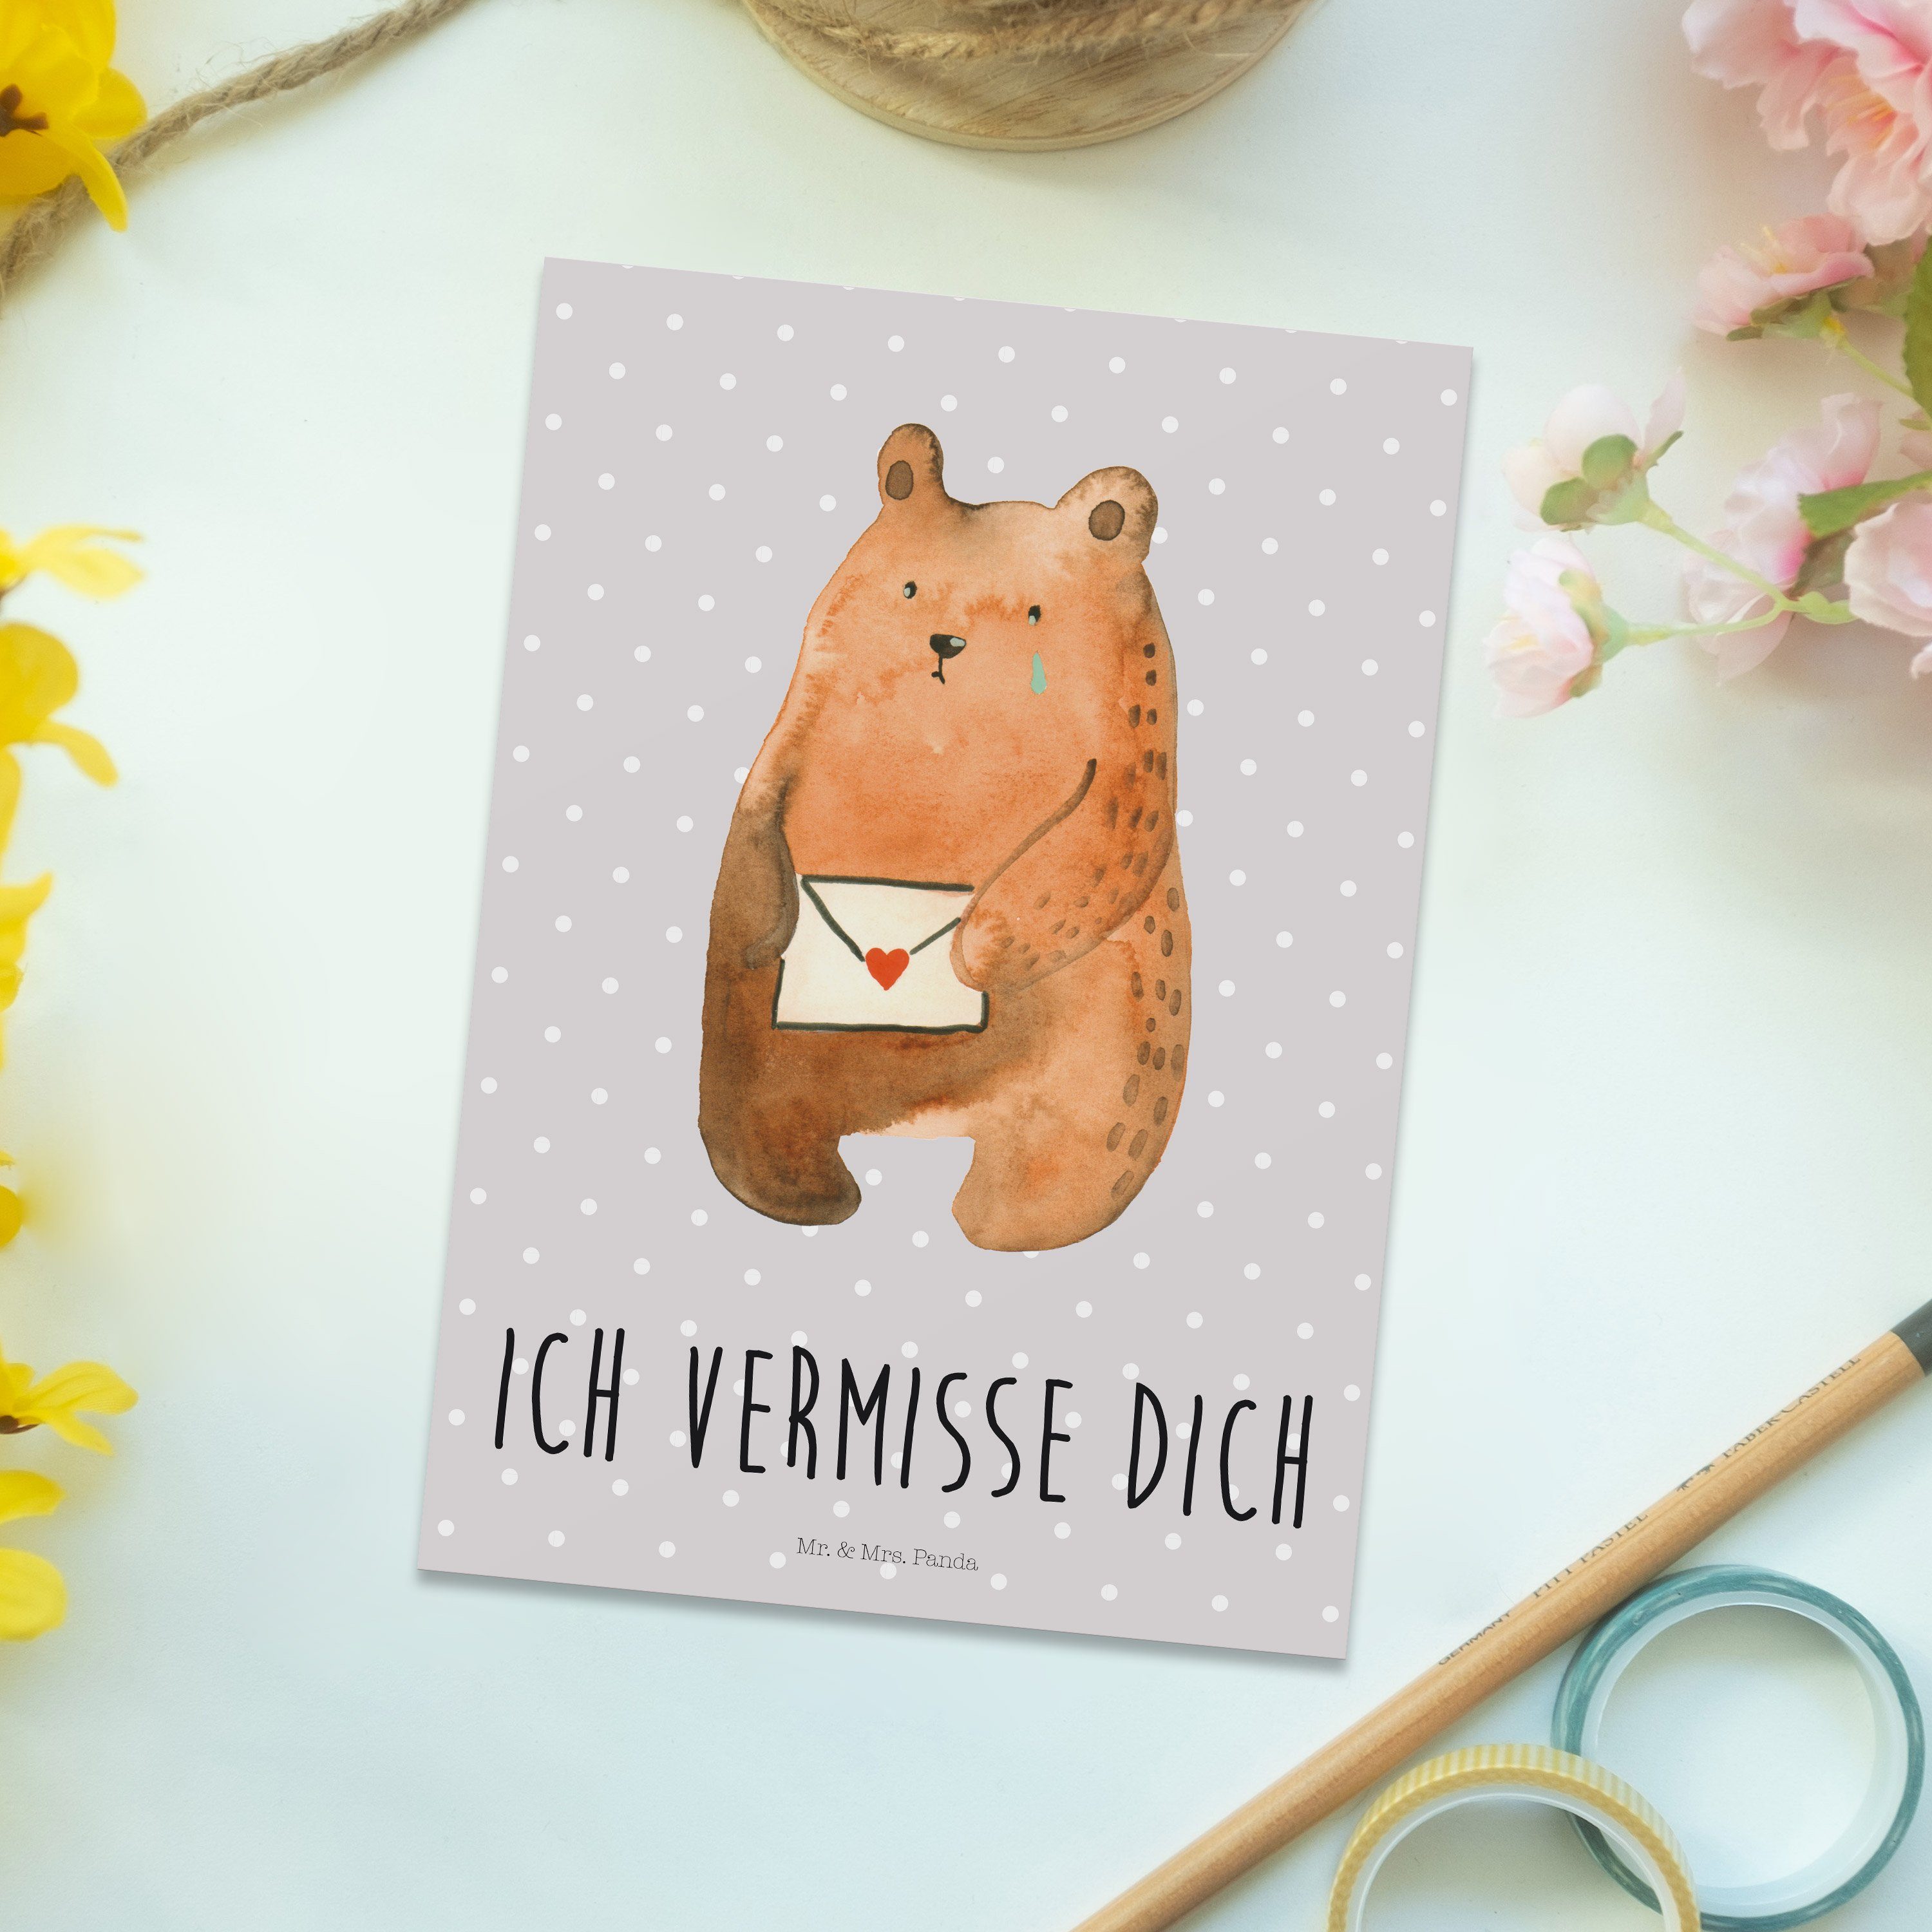 & Bär Teddy, Panda Postkarte Mrs. Unglücklich Mr. - dich - Grau v vermisse Pastell Ich Geschenk,